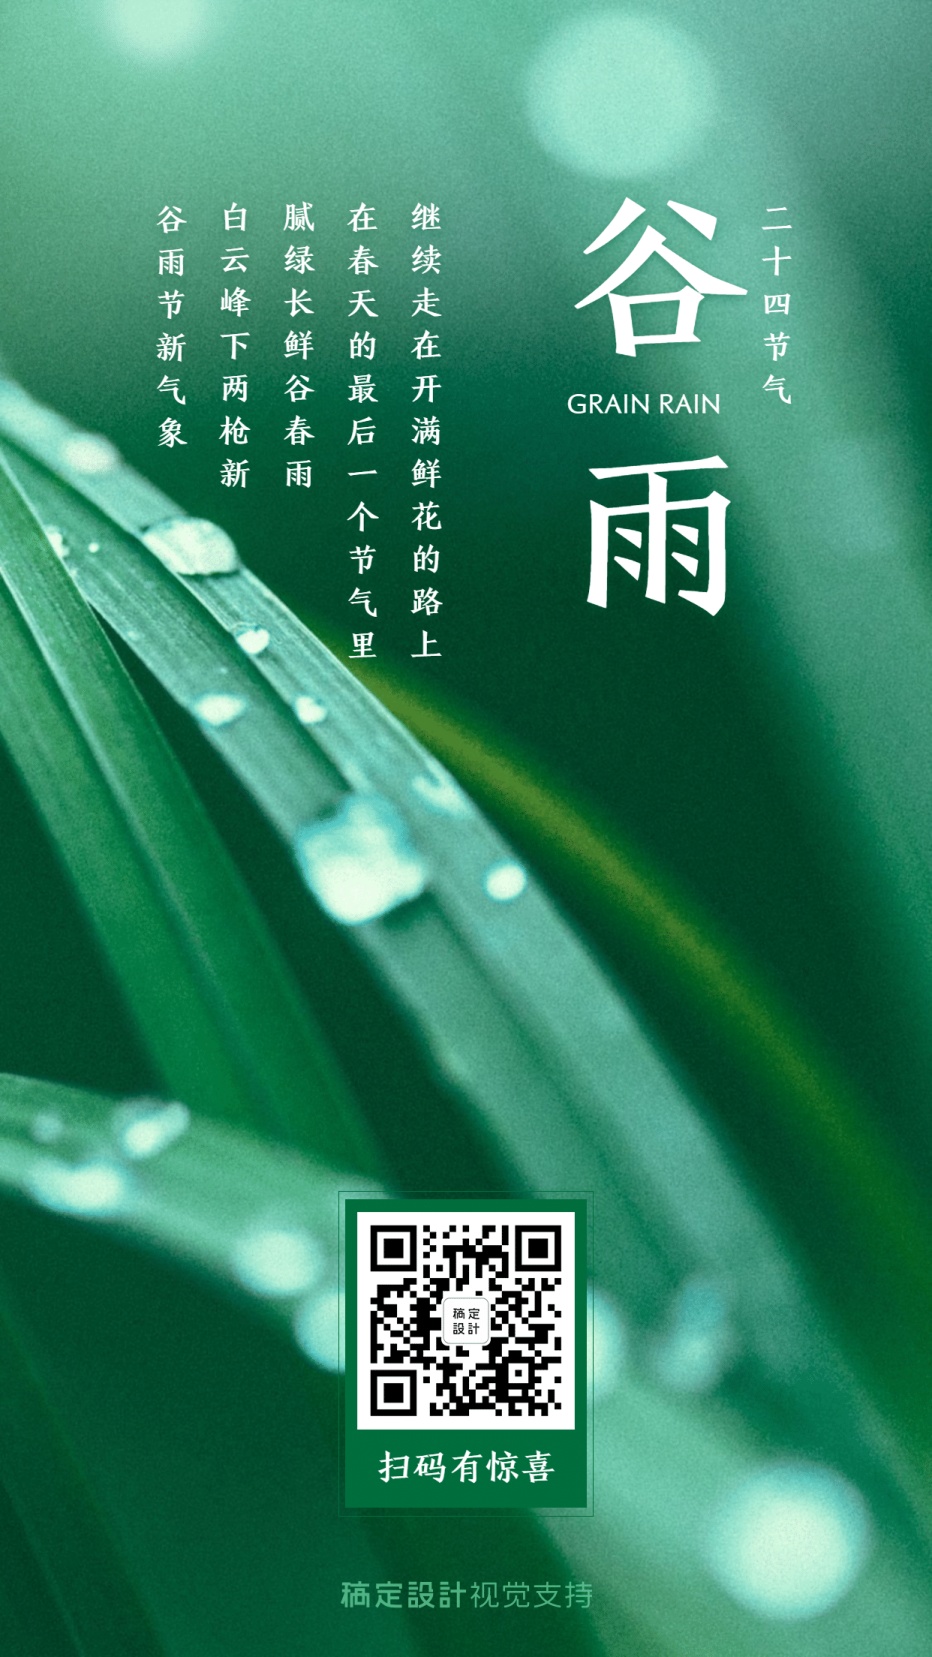 谷雨节气问候祝福宣传海报